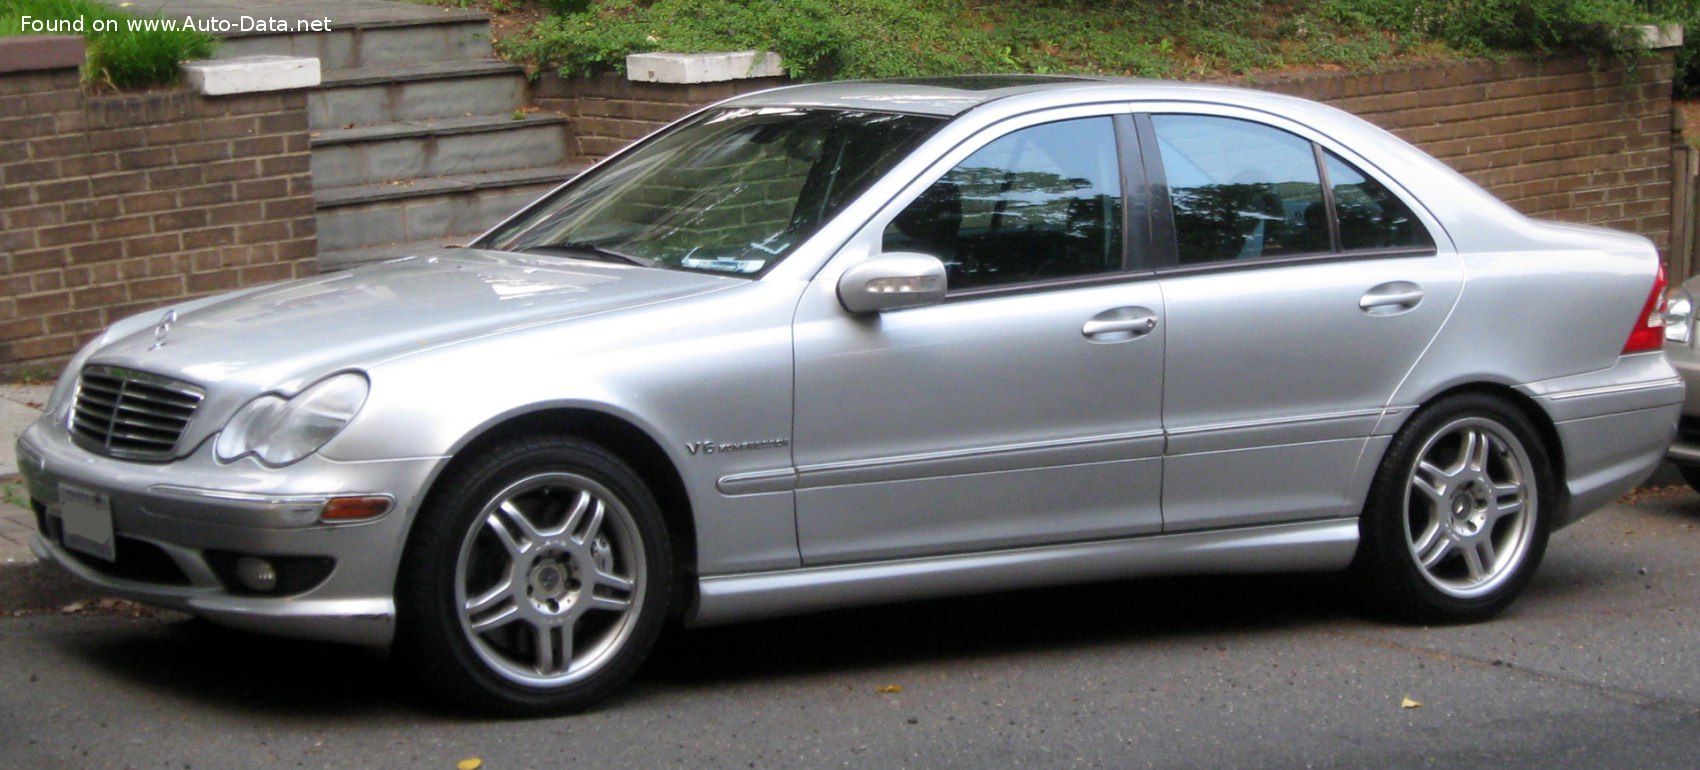 2001 Mercedes-Benz Clase C (W203) AMG C 32 V6 (354 CV) Automatic